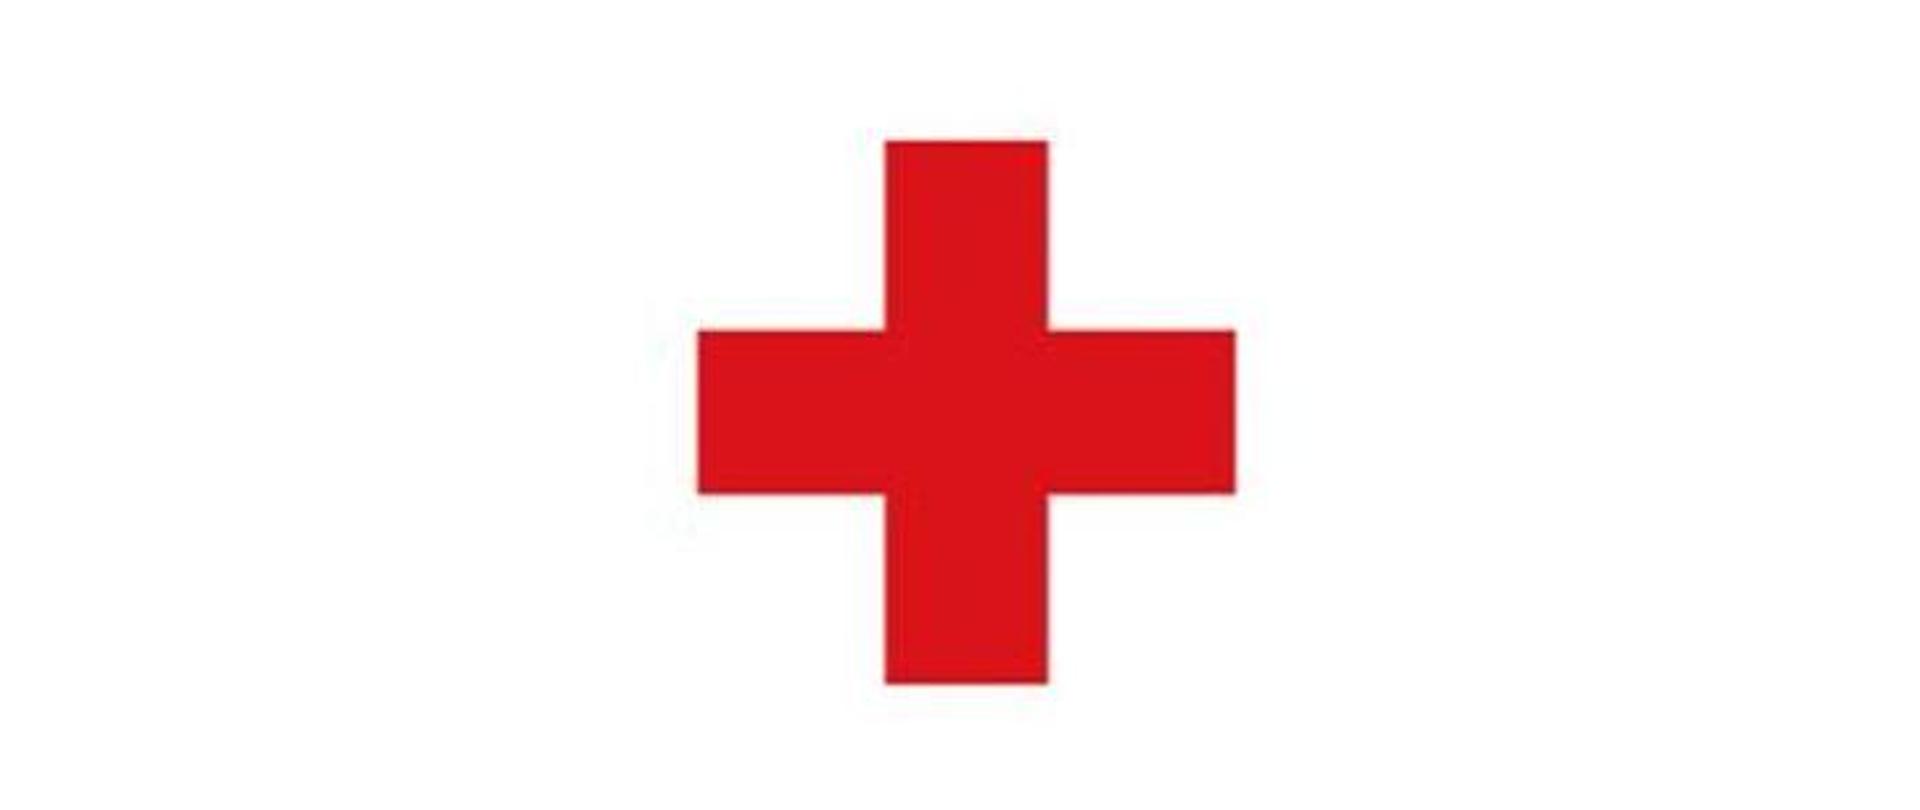 Zdjęcie przedstawia znak czerwonego krzyża na białym tle